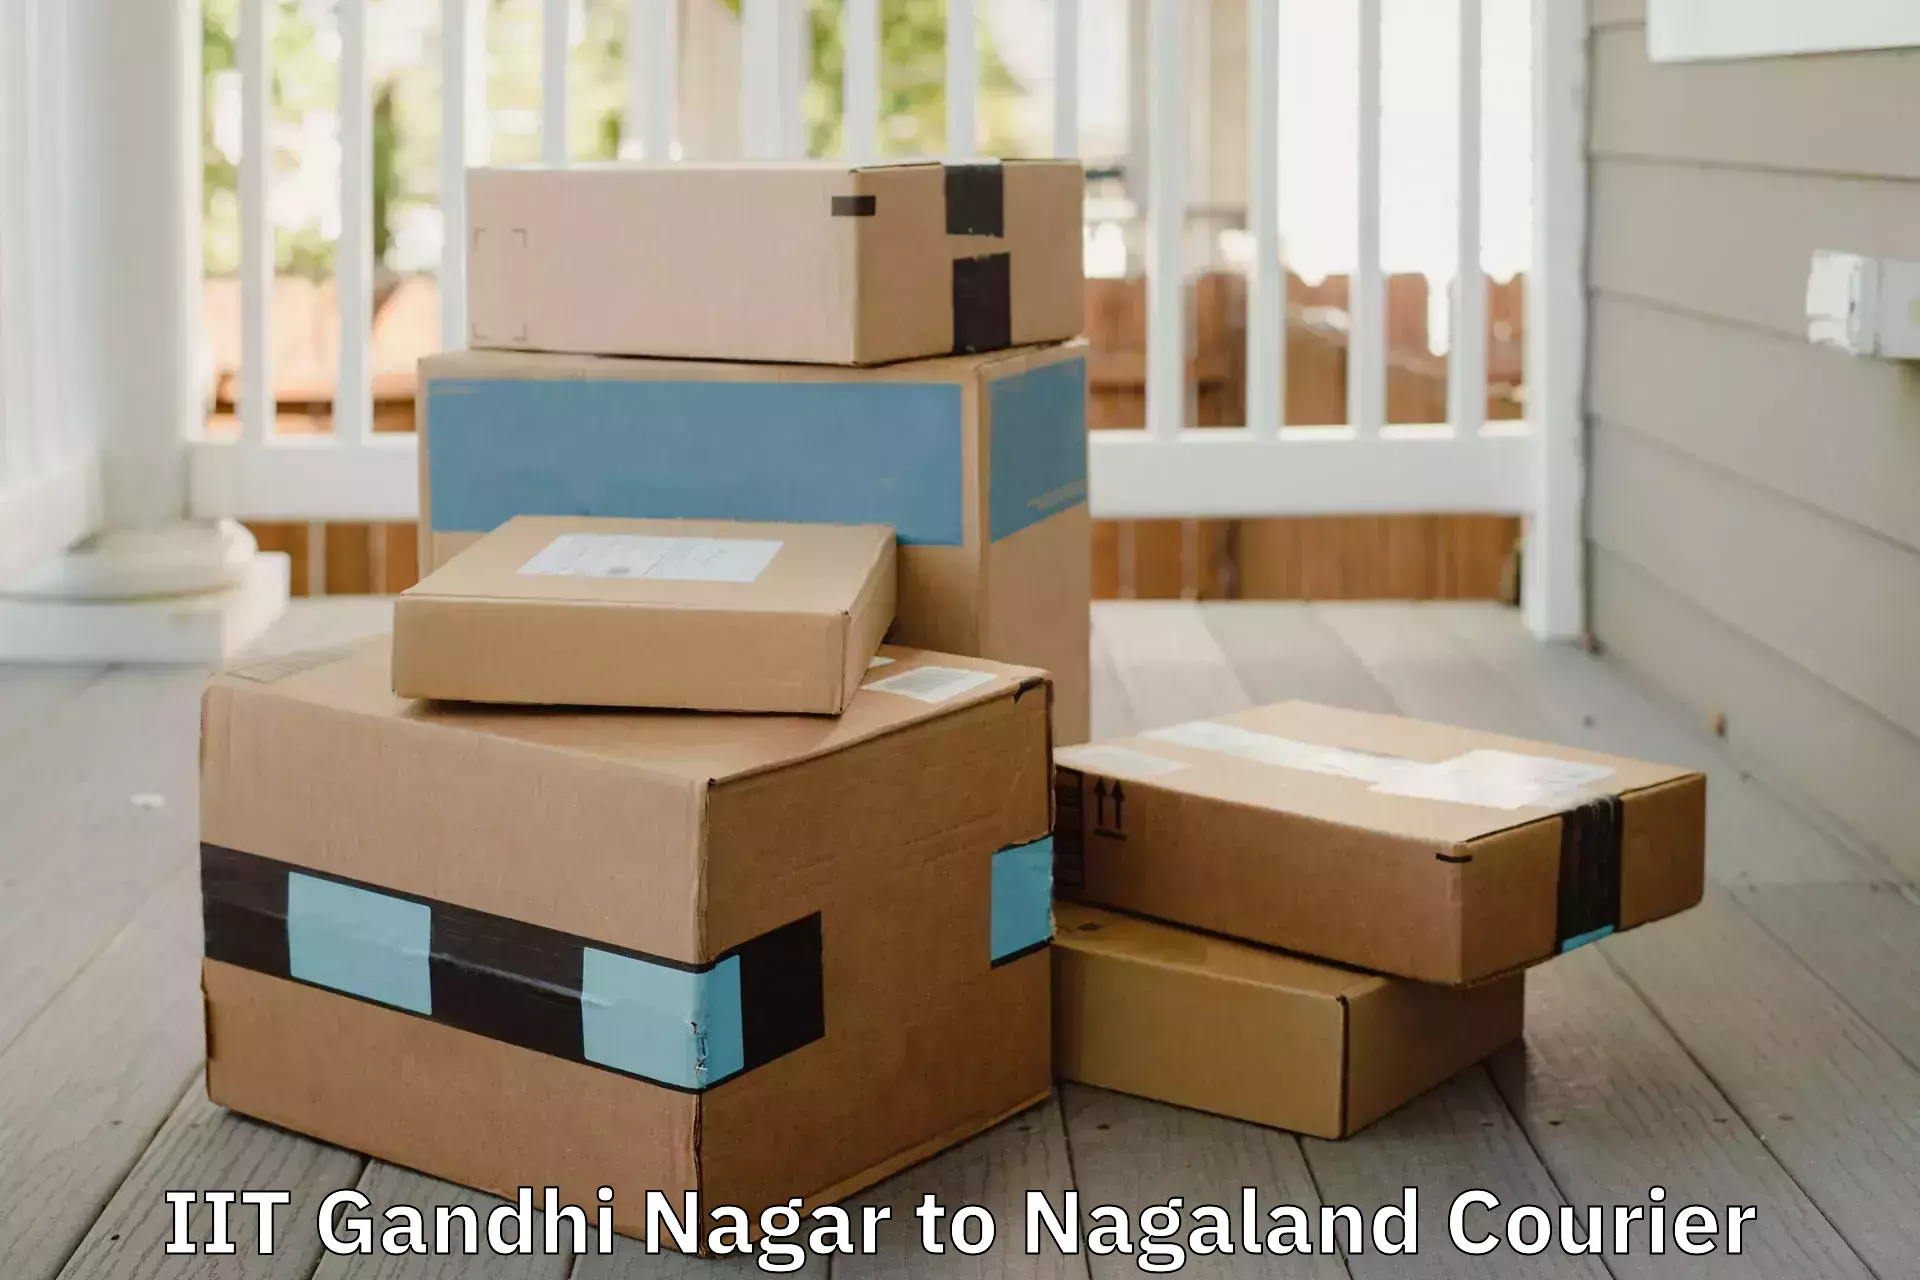 Quality furniture moving IIT Gandhi Nagar to Mon